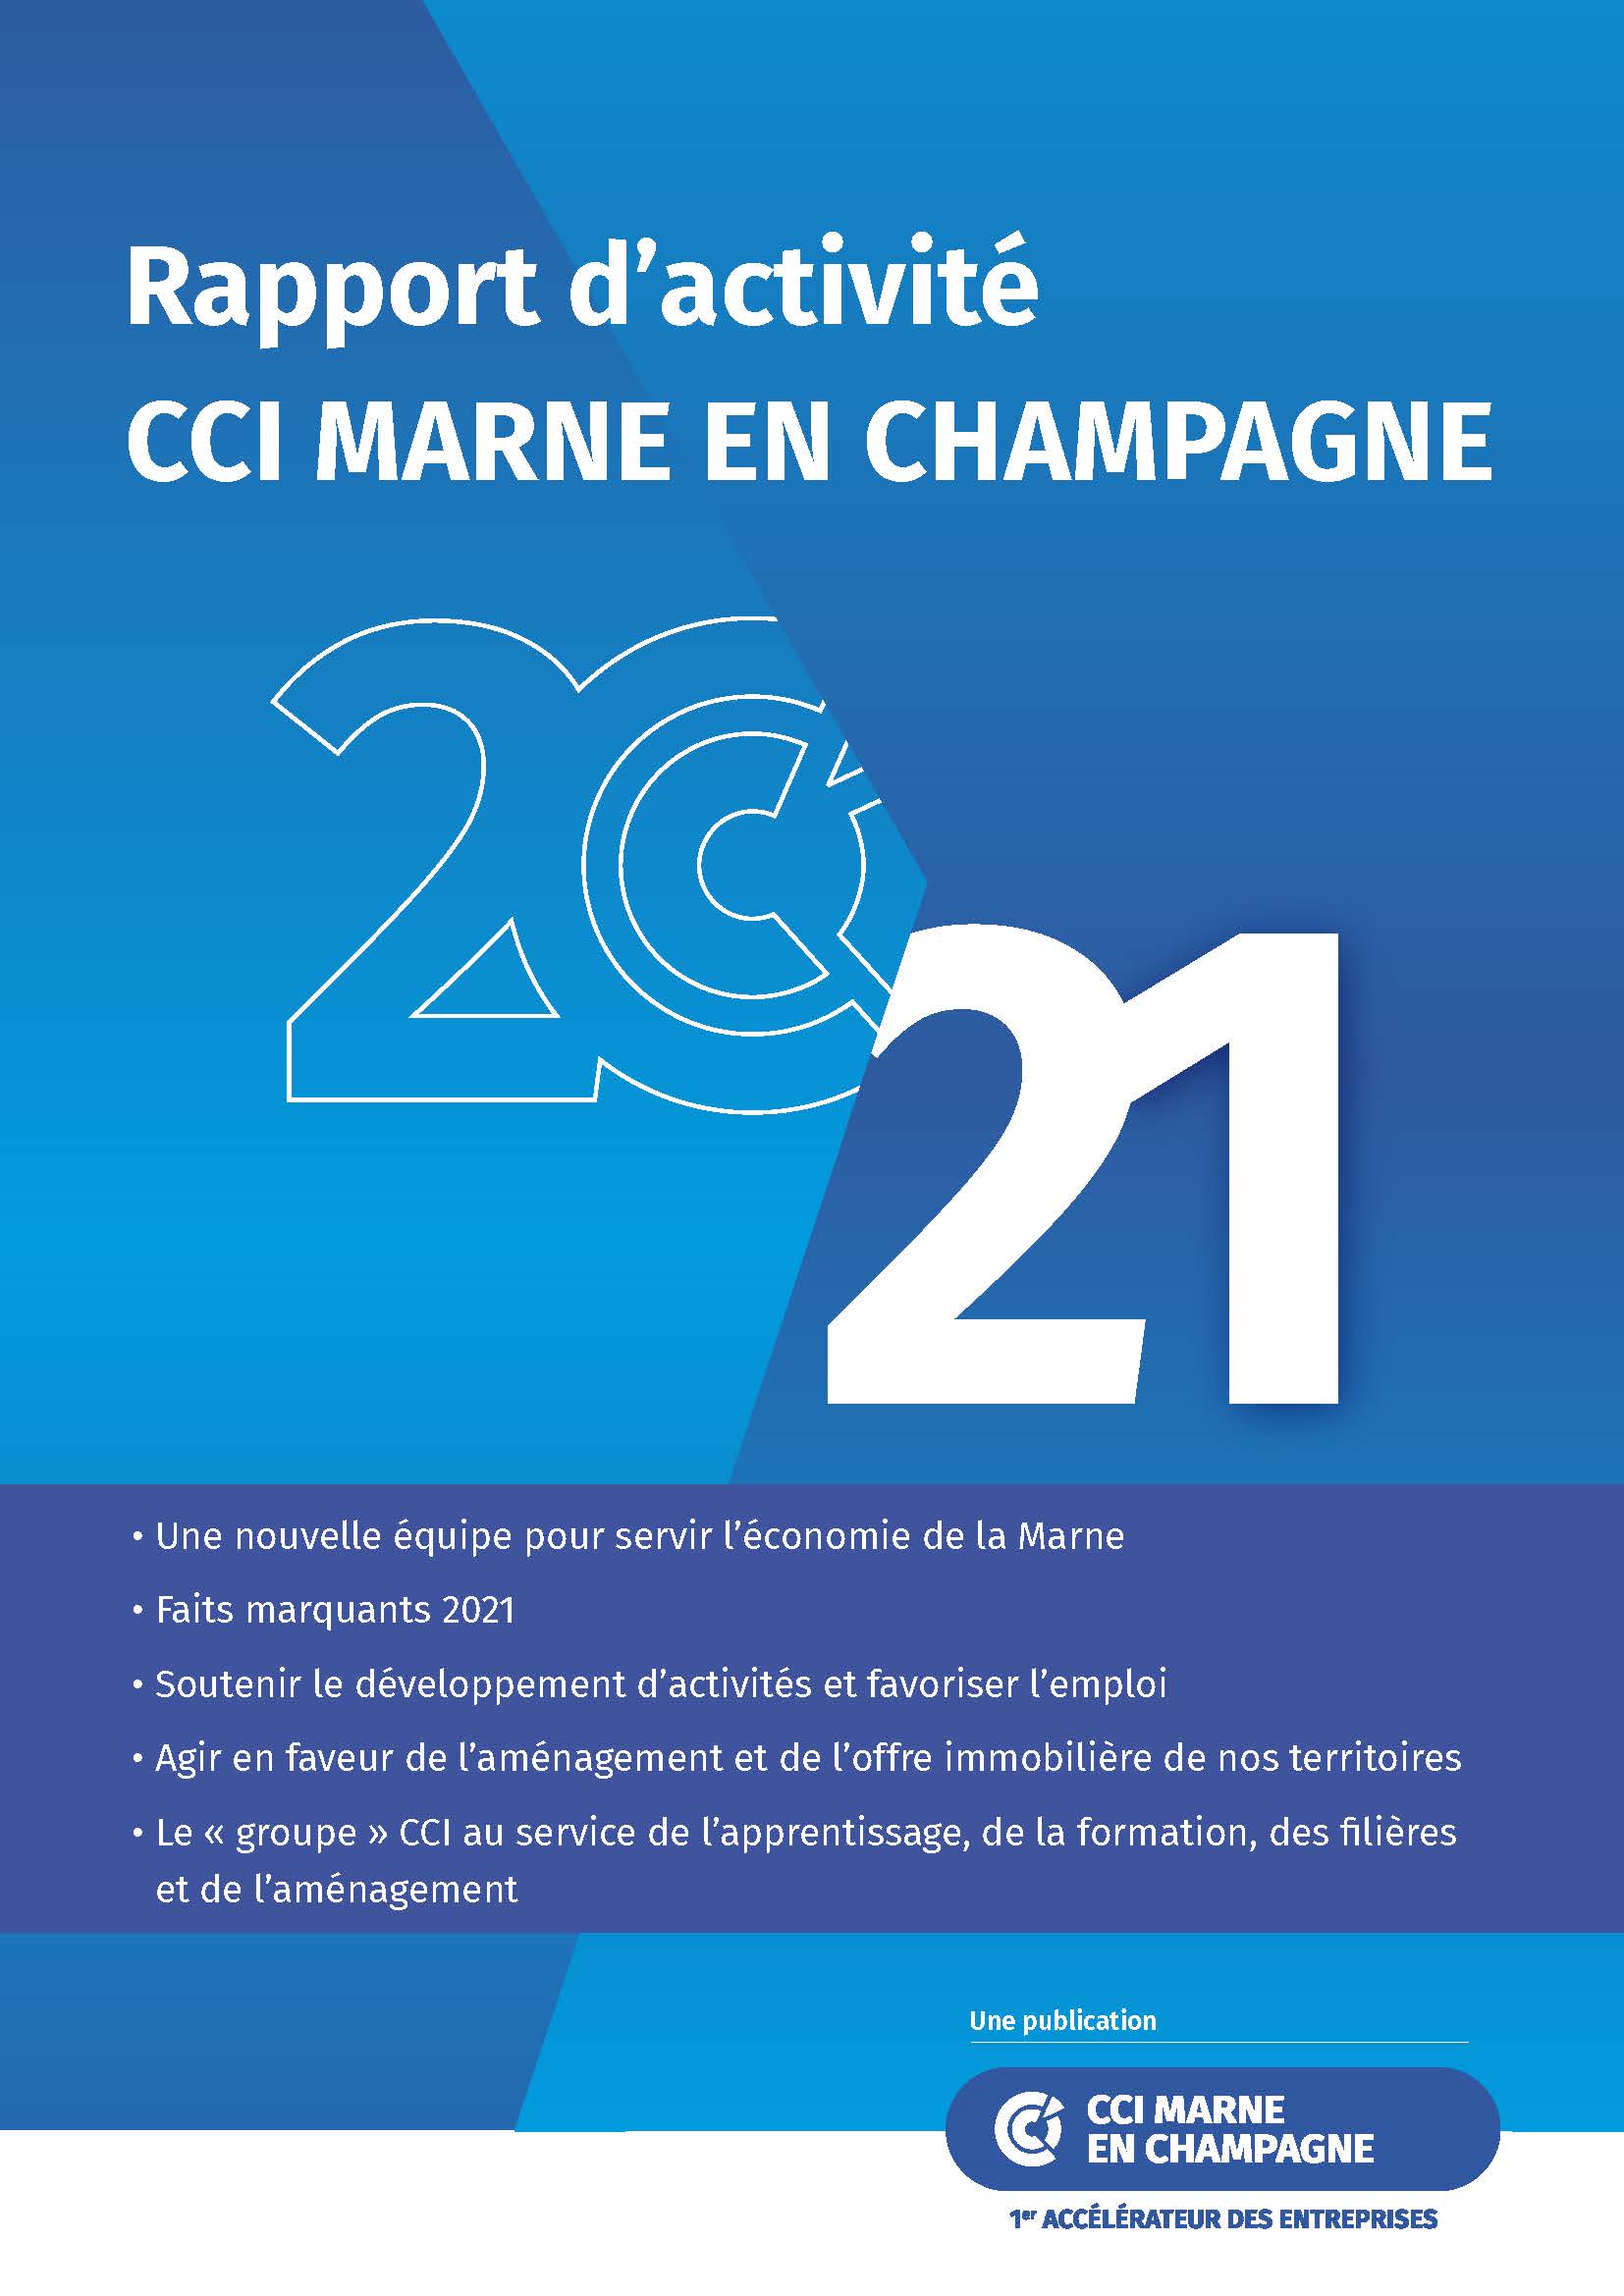 publication-rapport-d-activite-2021-cci-marne-en-champagne.jpeg